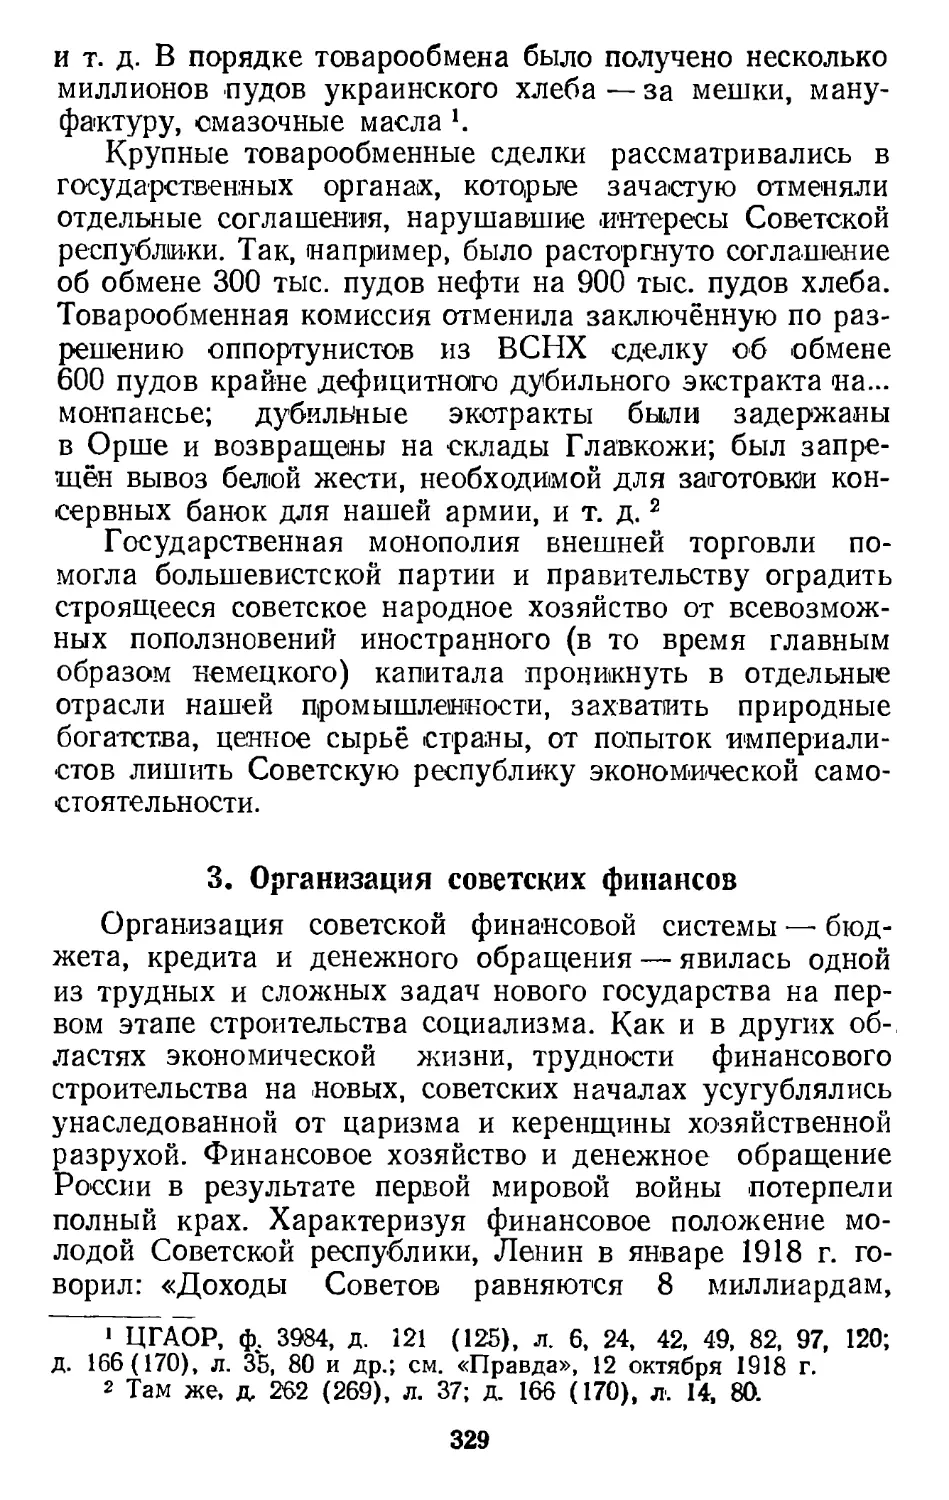 3. Организация советских финансов